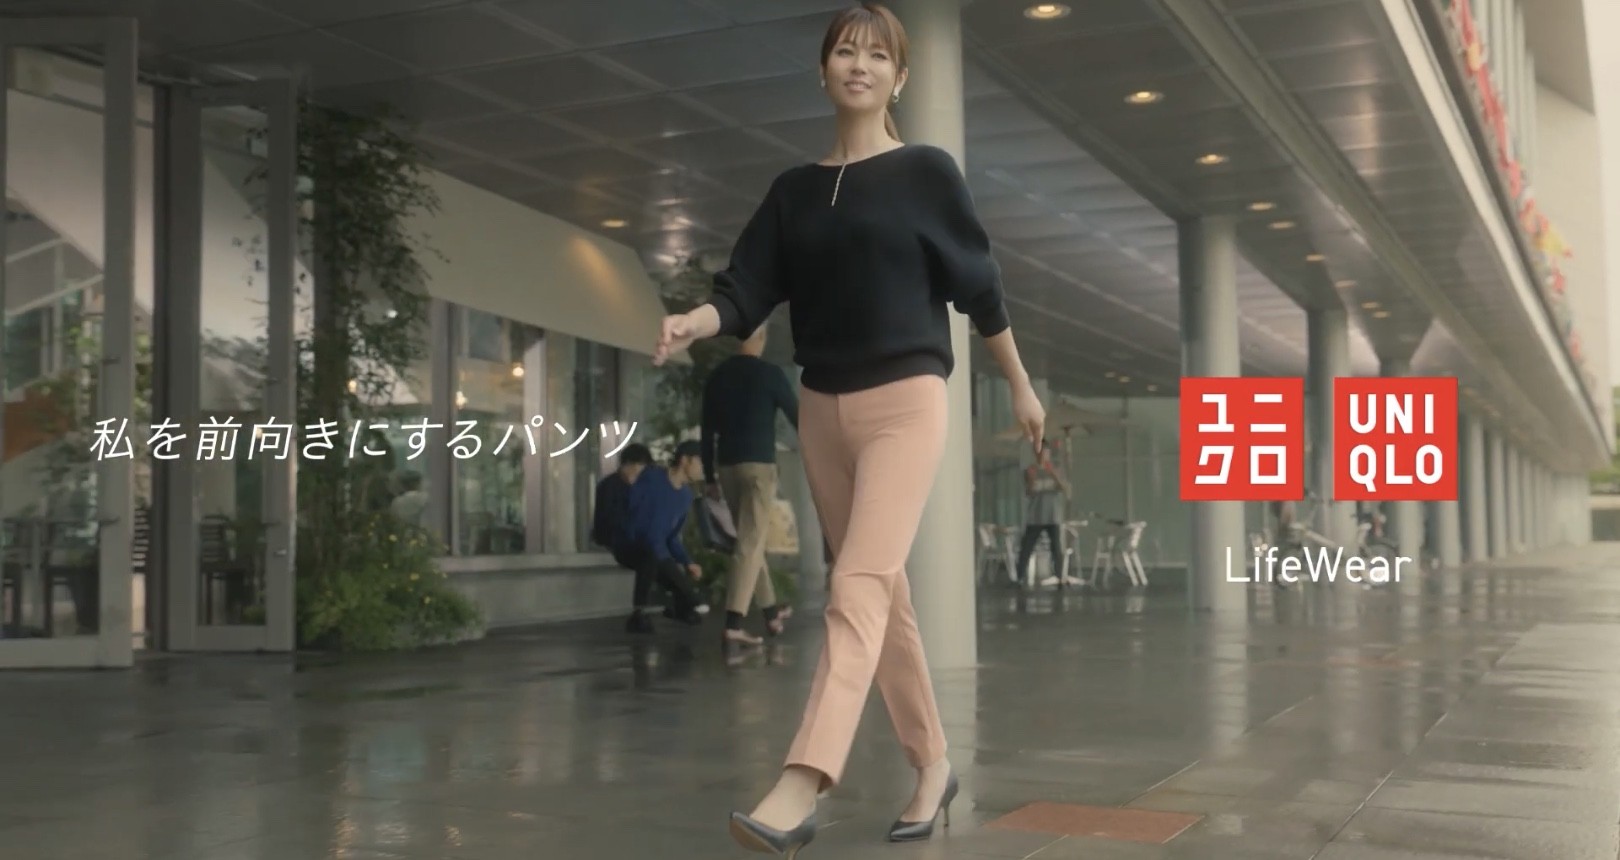 深田恭子がユニクロスマートパンツcmで美脚を披露 颯爽と歩く姿が美しい